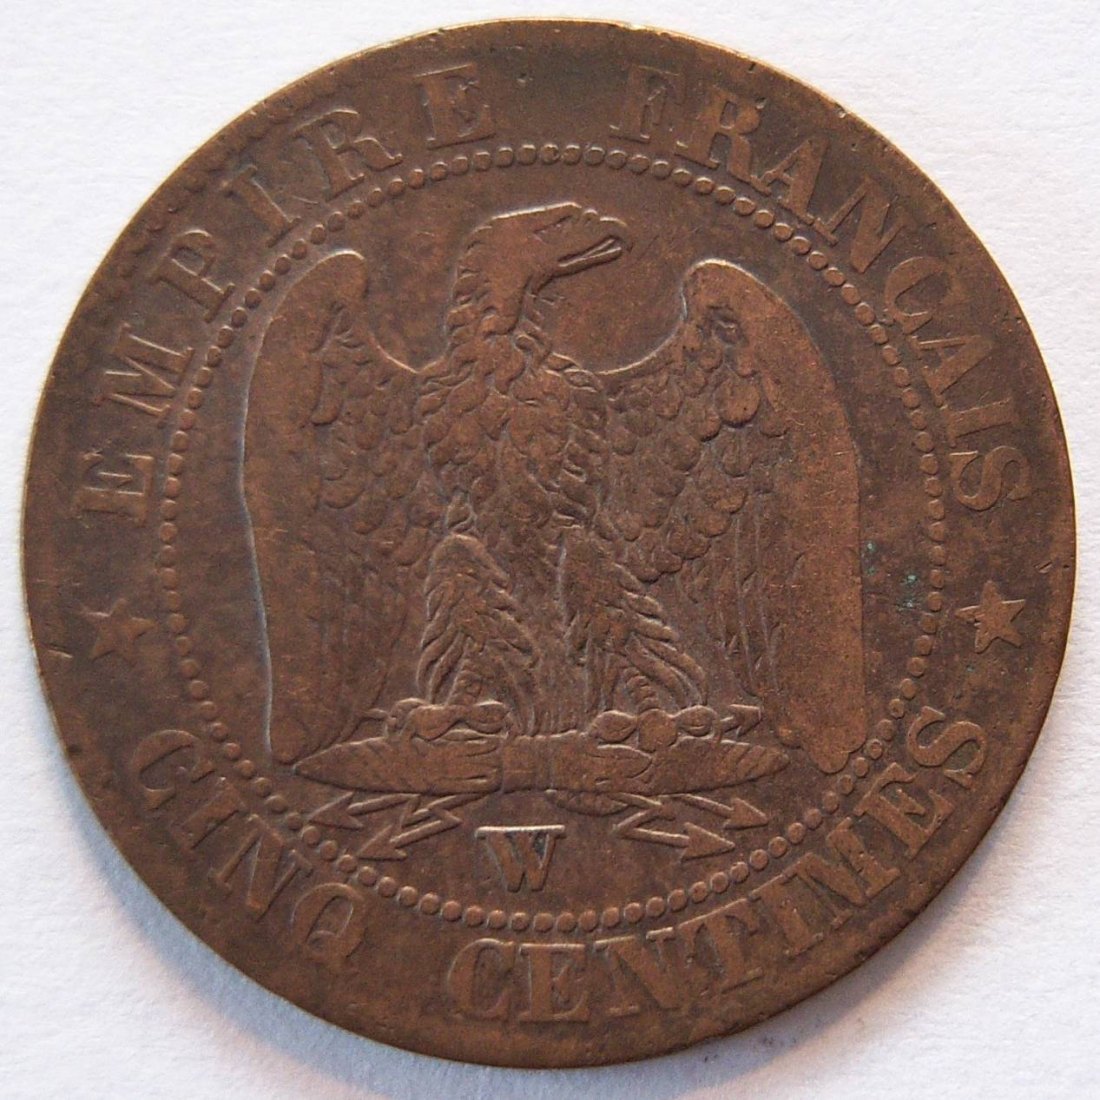  Frankreich 5 Centimes 1855 W   